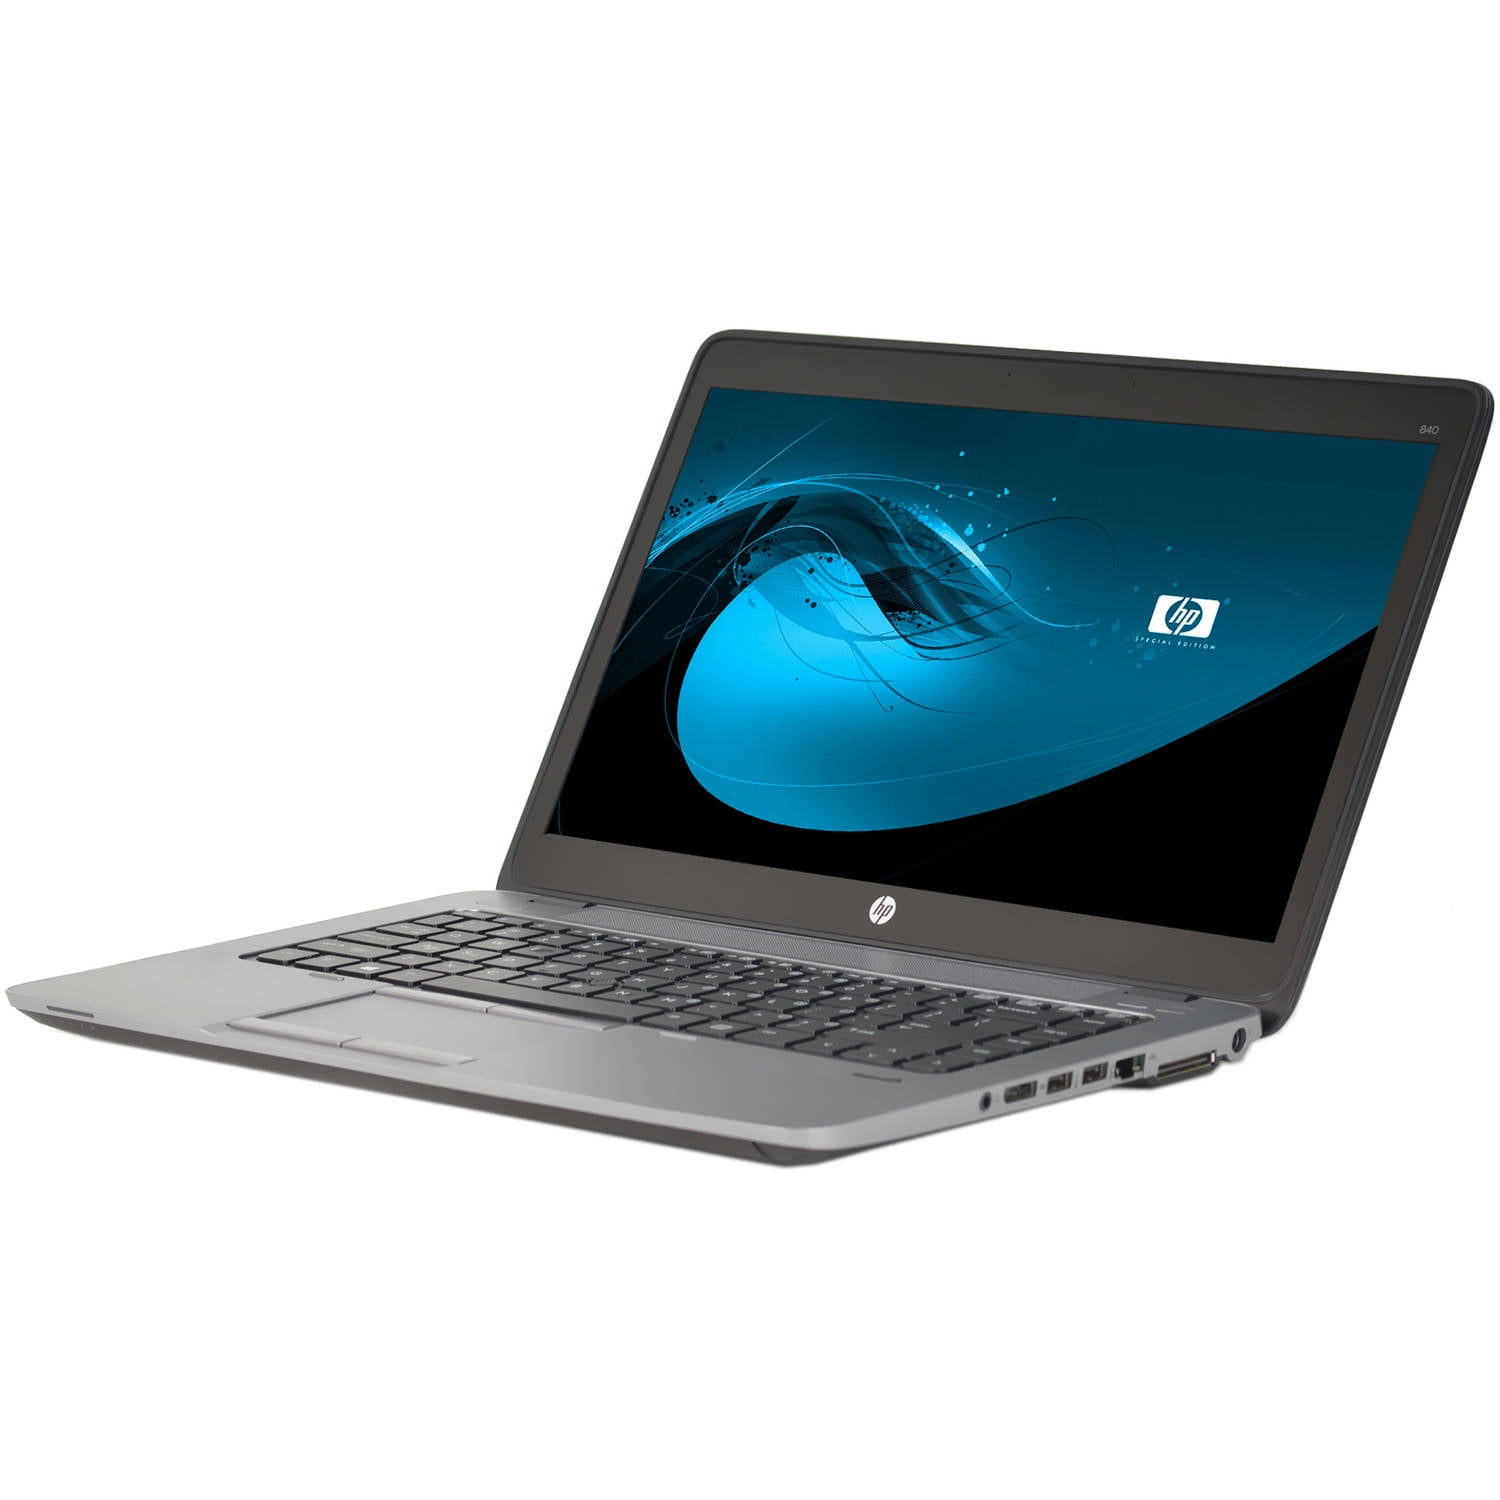 welvaart In de omgeving van haag Restored HP EliteBook 840 G1 14" Laptop, Windows 10 Home, Intel Core  i5-4300U Processor, 8GB RAM, 500GB Hard Drive (Refurbished) - Walmart.com